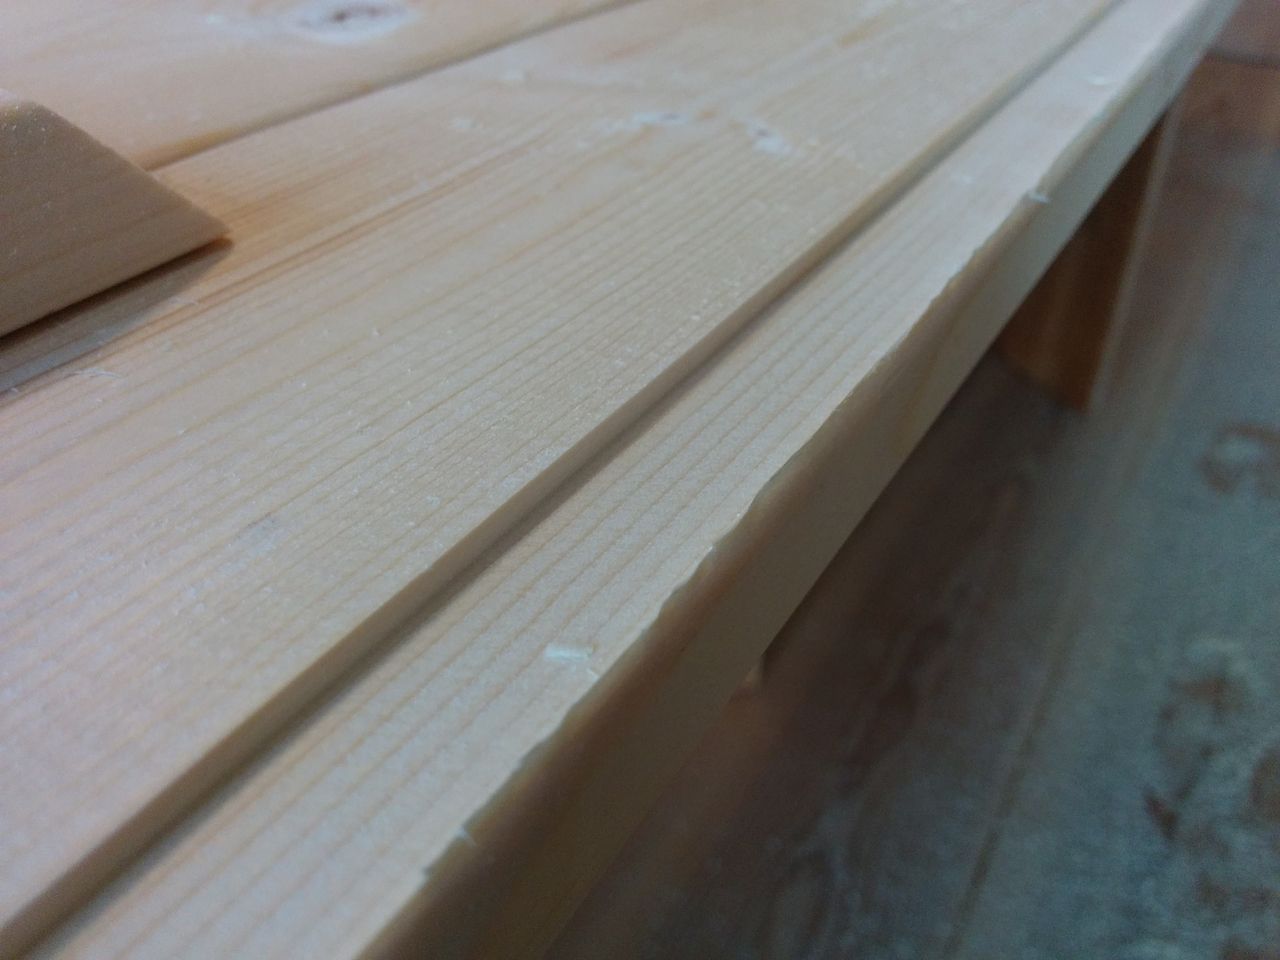 新規で取り付ける木枠材の厚みが、これからはめ込む溝よりも少し厚かったためトリマーを使って掘り込みました。